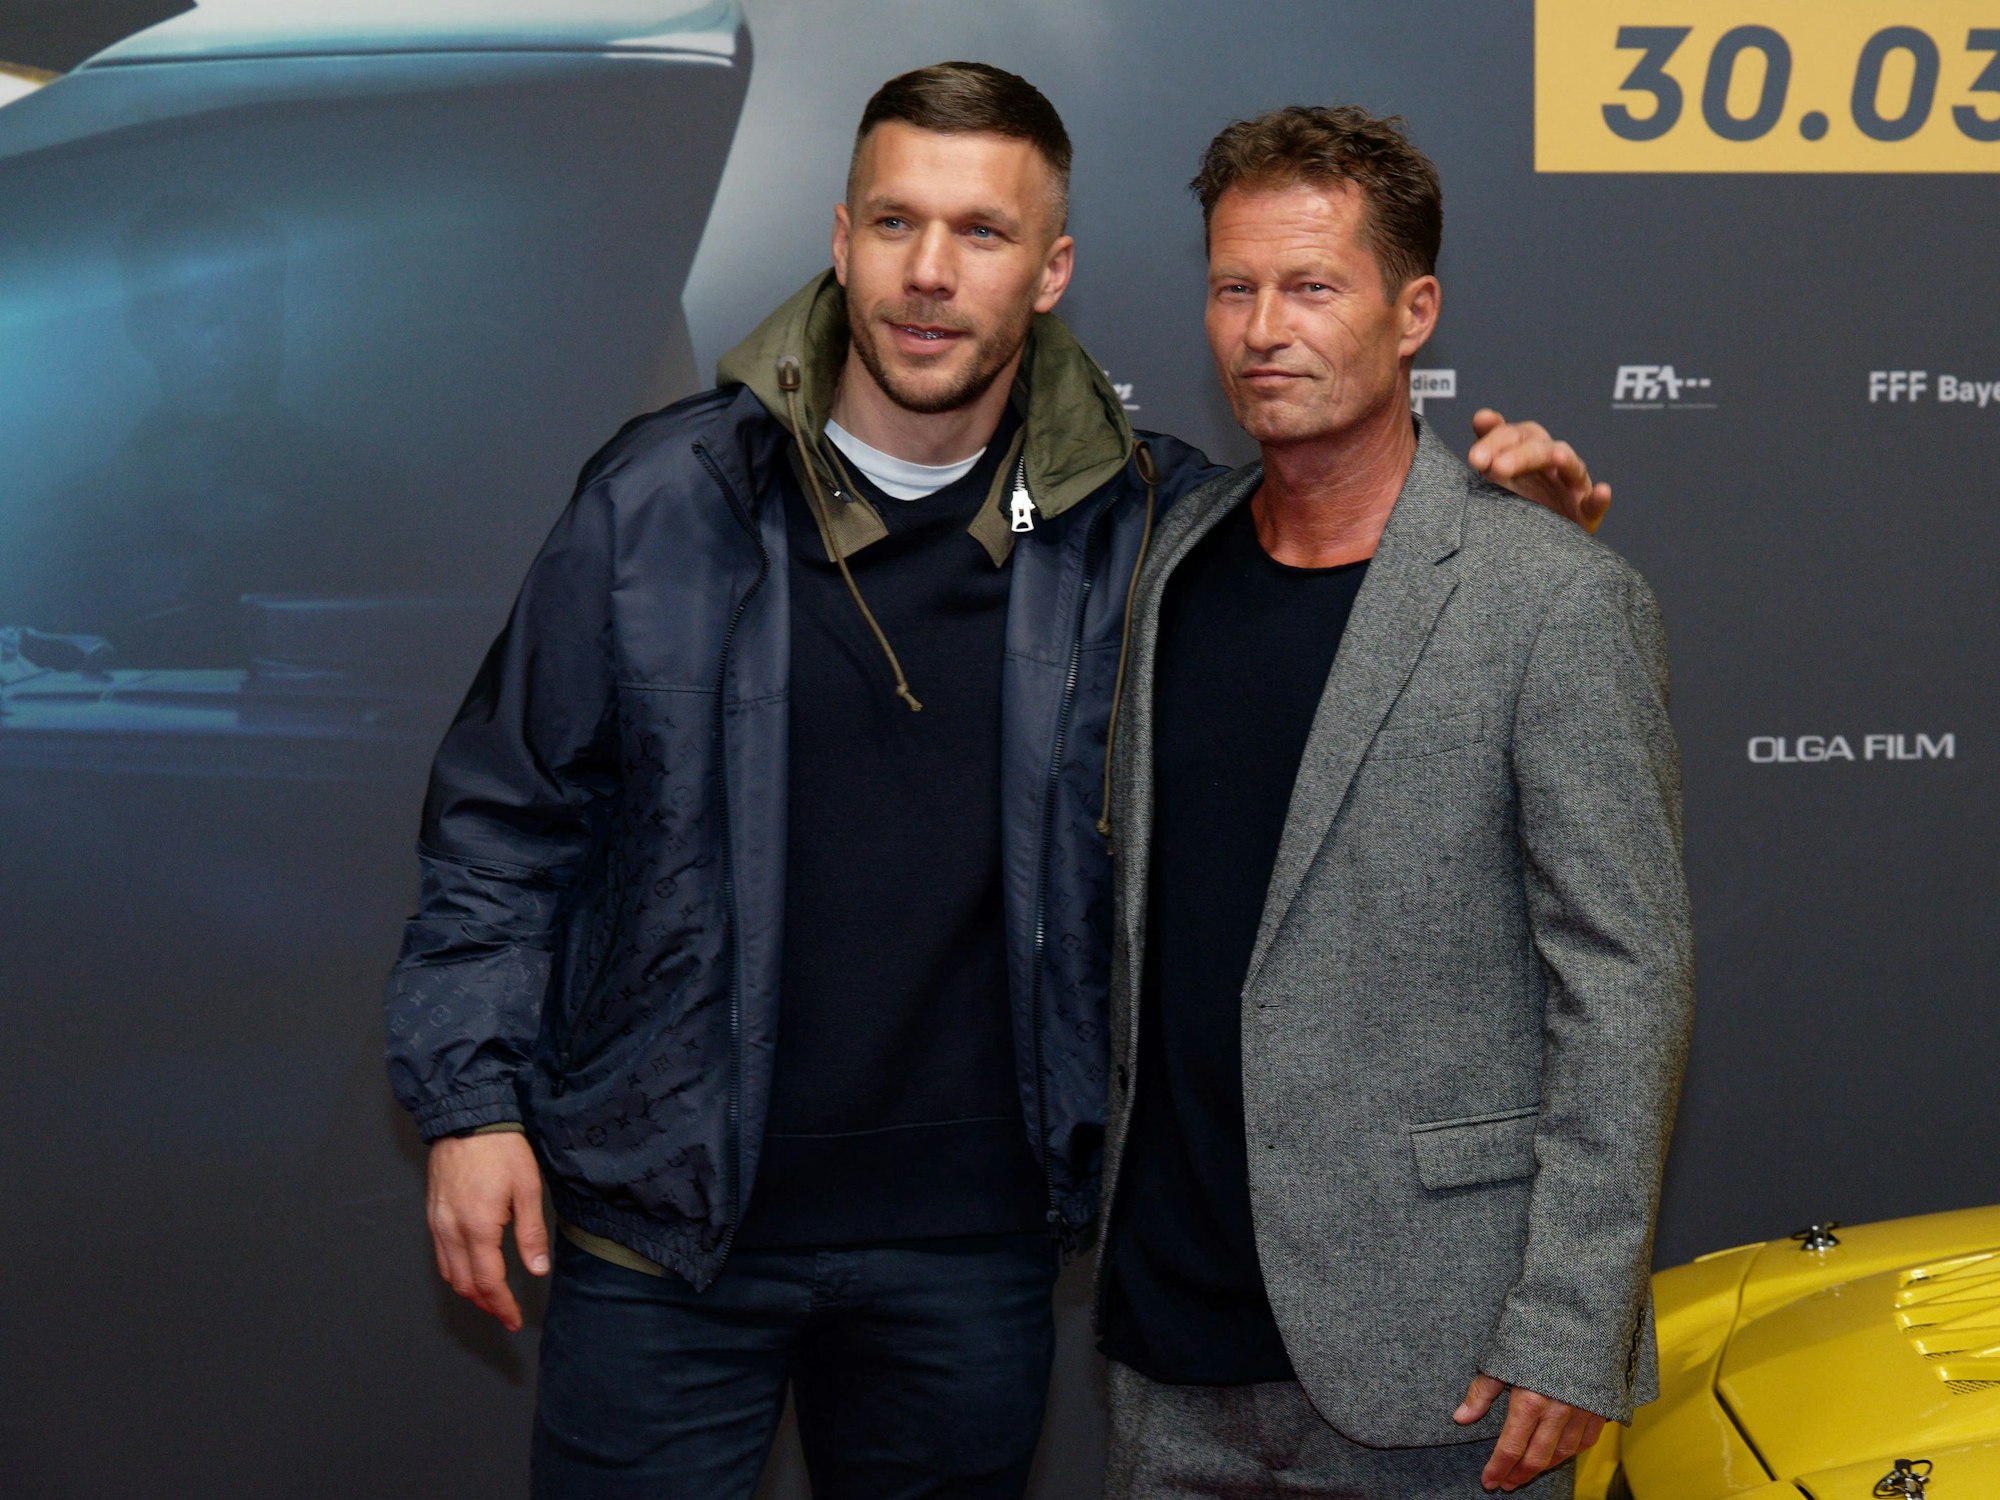 Lukas Podolski und Til Schweiger kommen zu Premiere des Films "Manta Manta – Zwoter Teil".